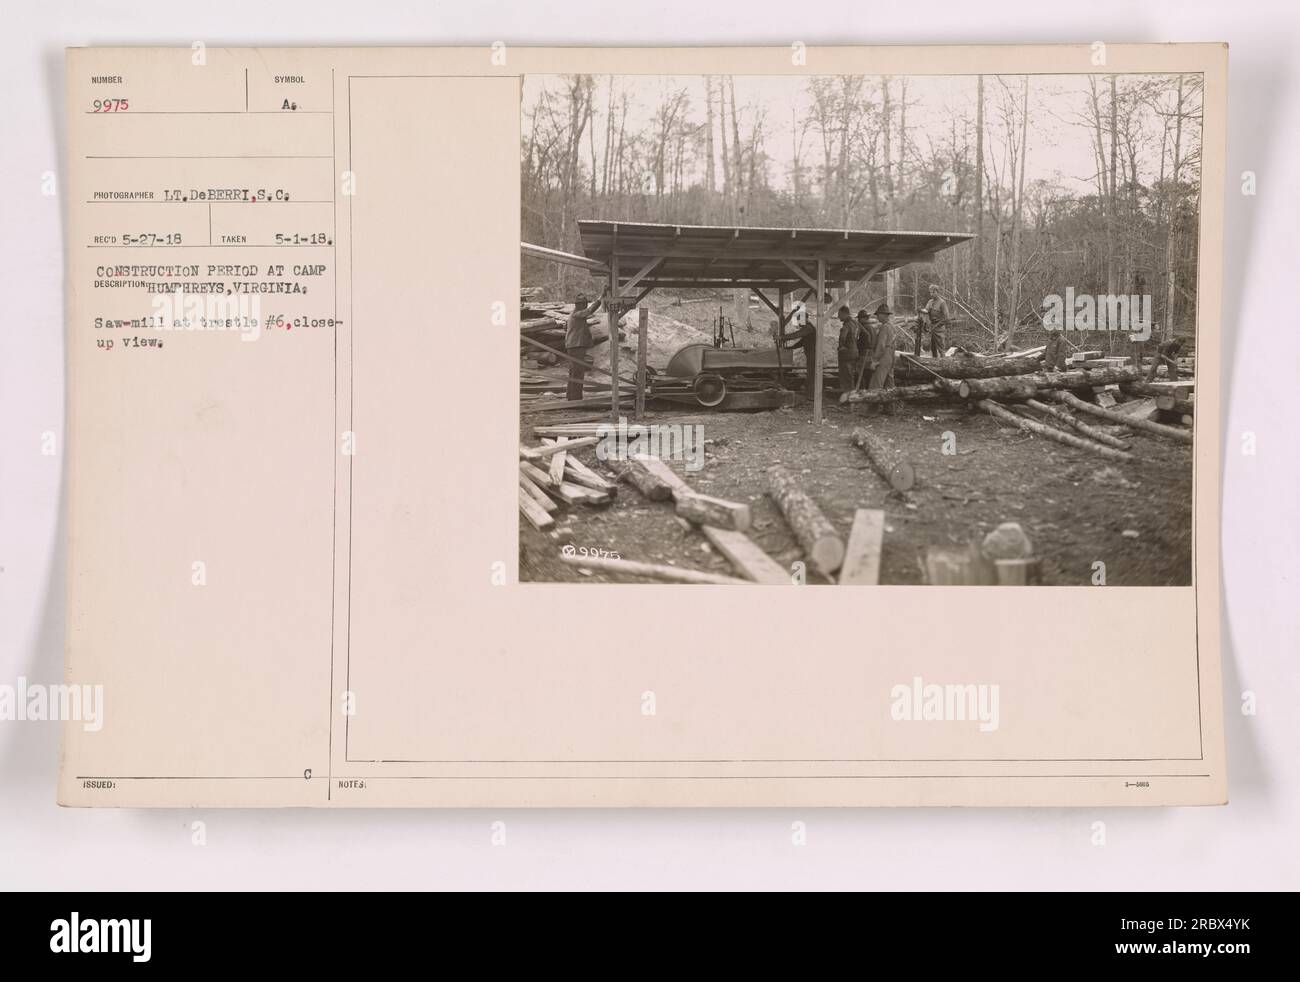 Nahaufnahme des Sägewerks an Baustelle Nr. 6 während der Bauzeit im Camp Humphreys, Virginia. Dieses Foto mit der Nummer 9975 wurde am 1. Mai 1918 von Lieutenant Doberris, S.C. aufgenommen Es zeigt das Sägewerk, das im Rahmen der Bauarbeiten im Lager betrieben wird. Stockfoto